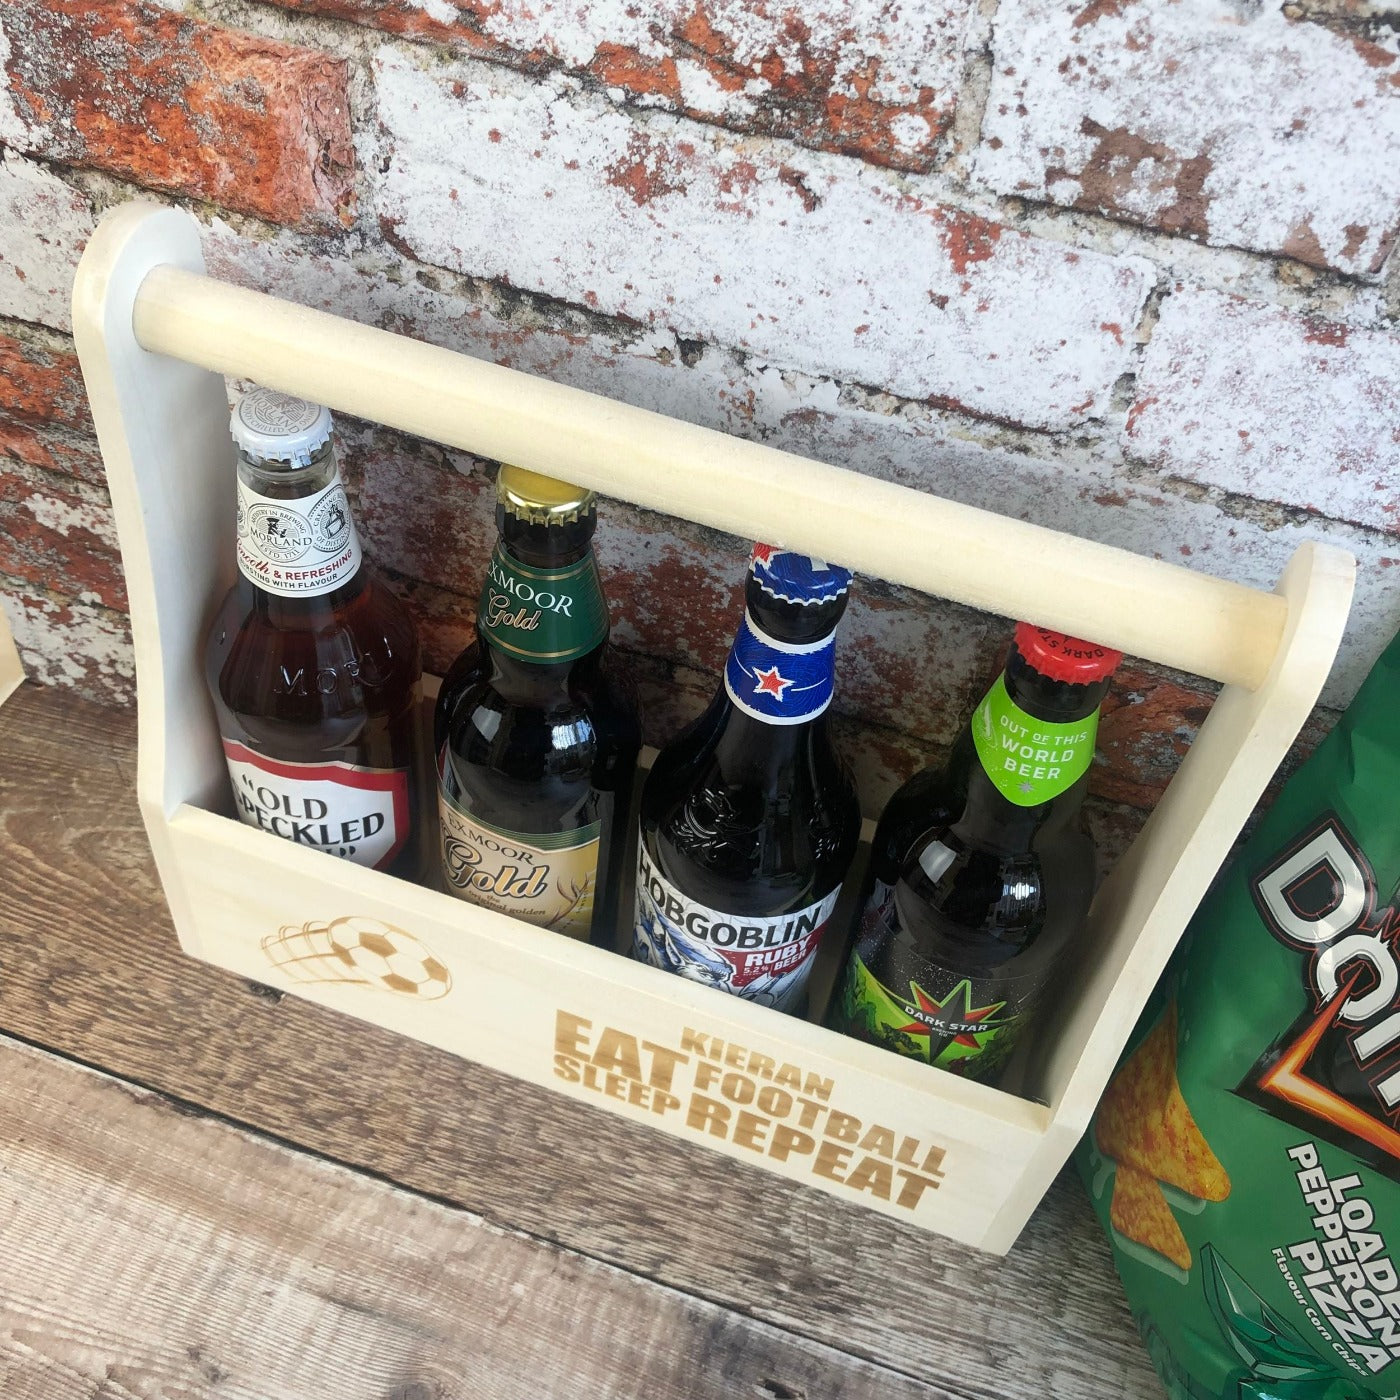 Personalised Wooden Beer Carrier - Eat, Sleep, Beer, Repeat